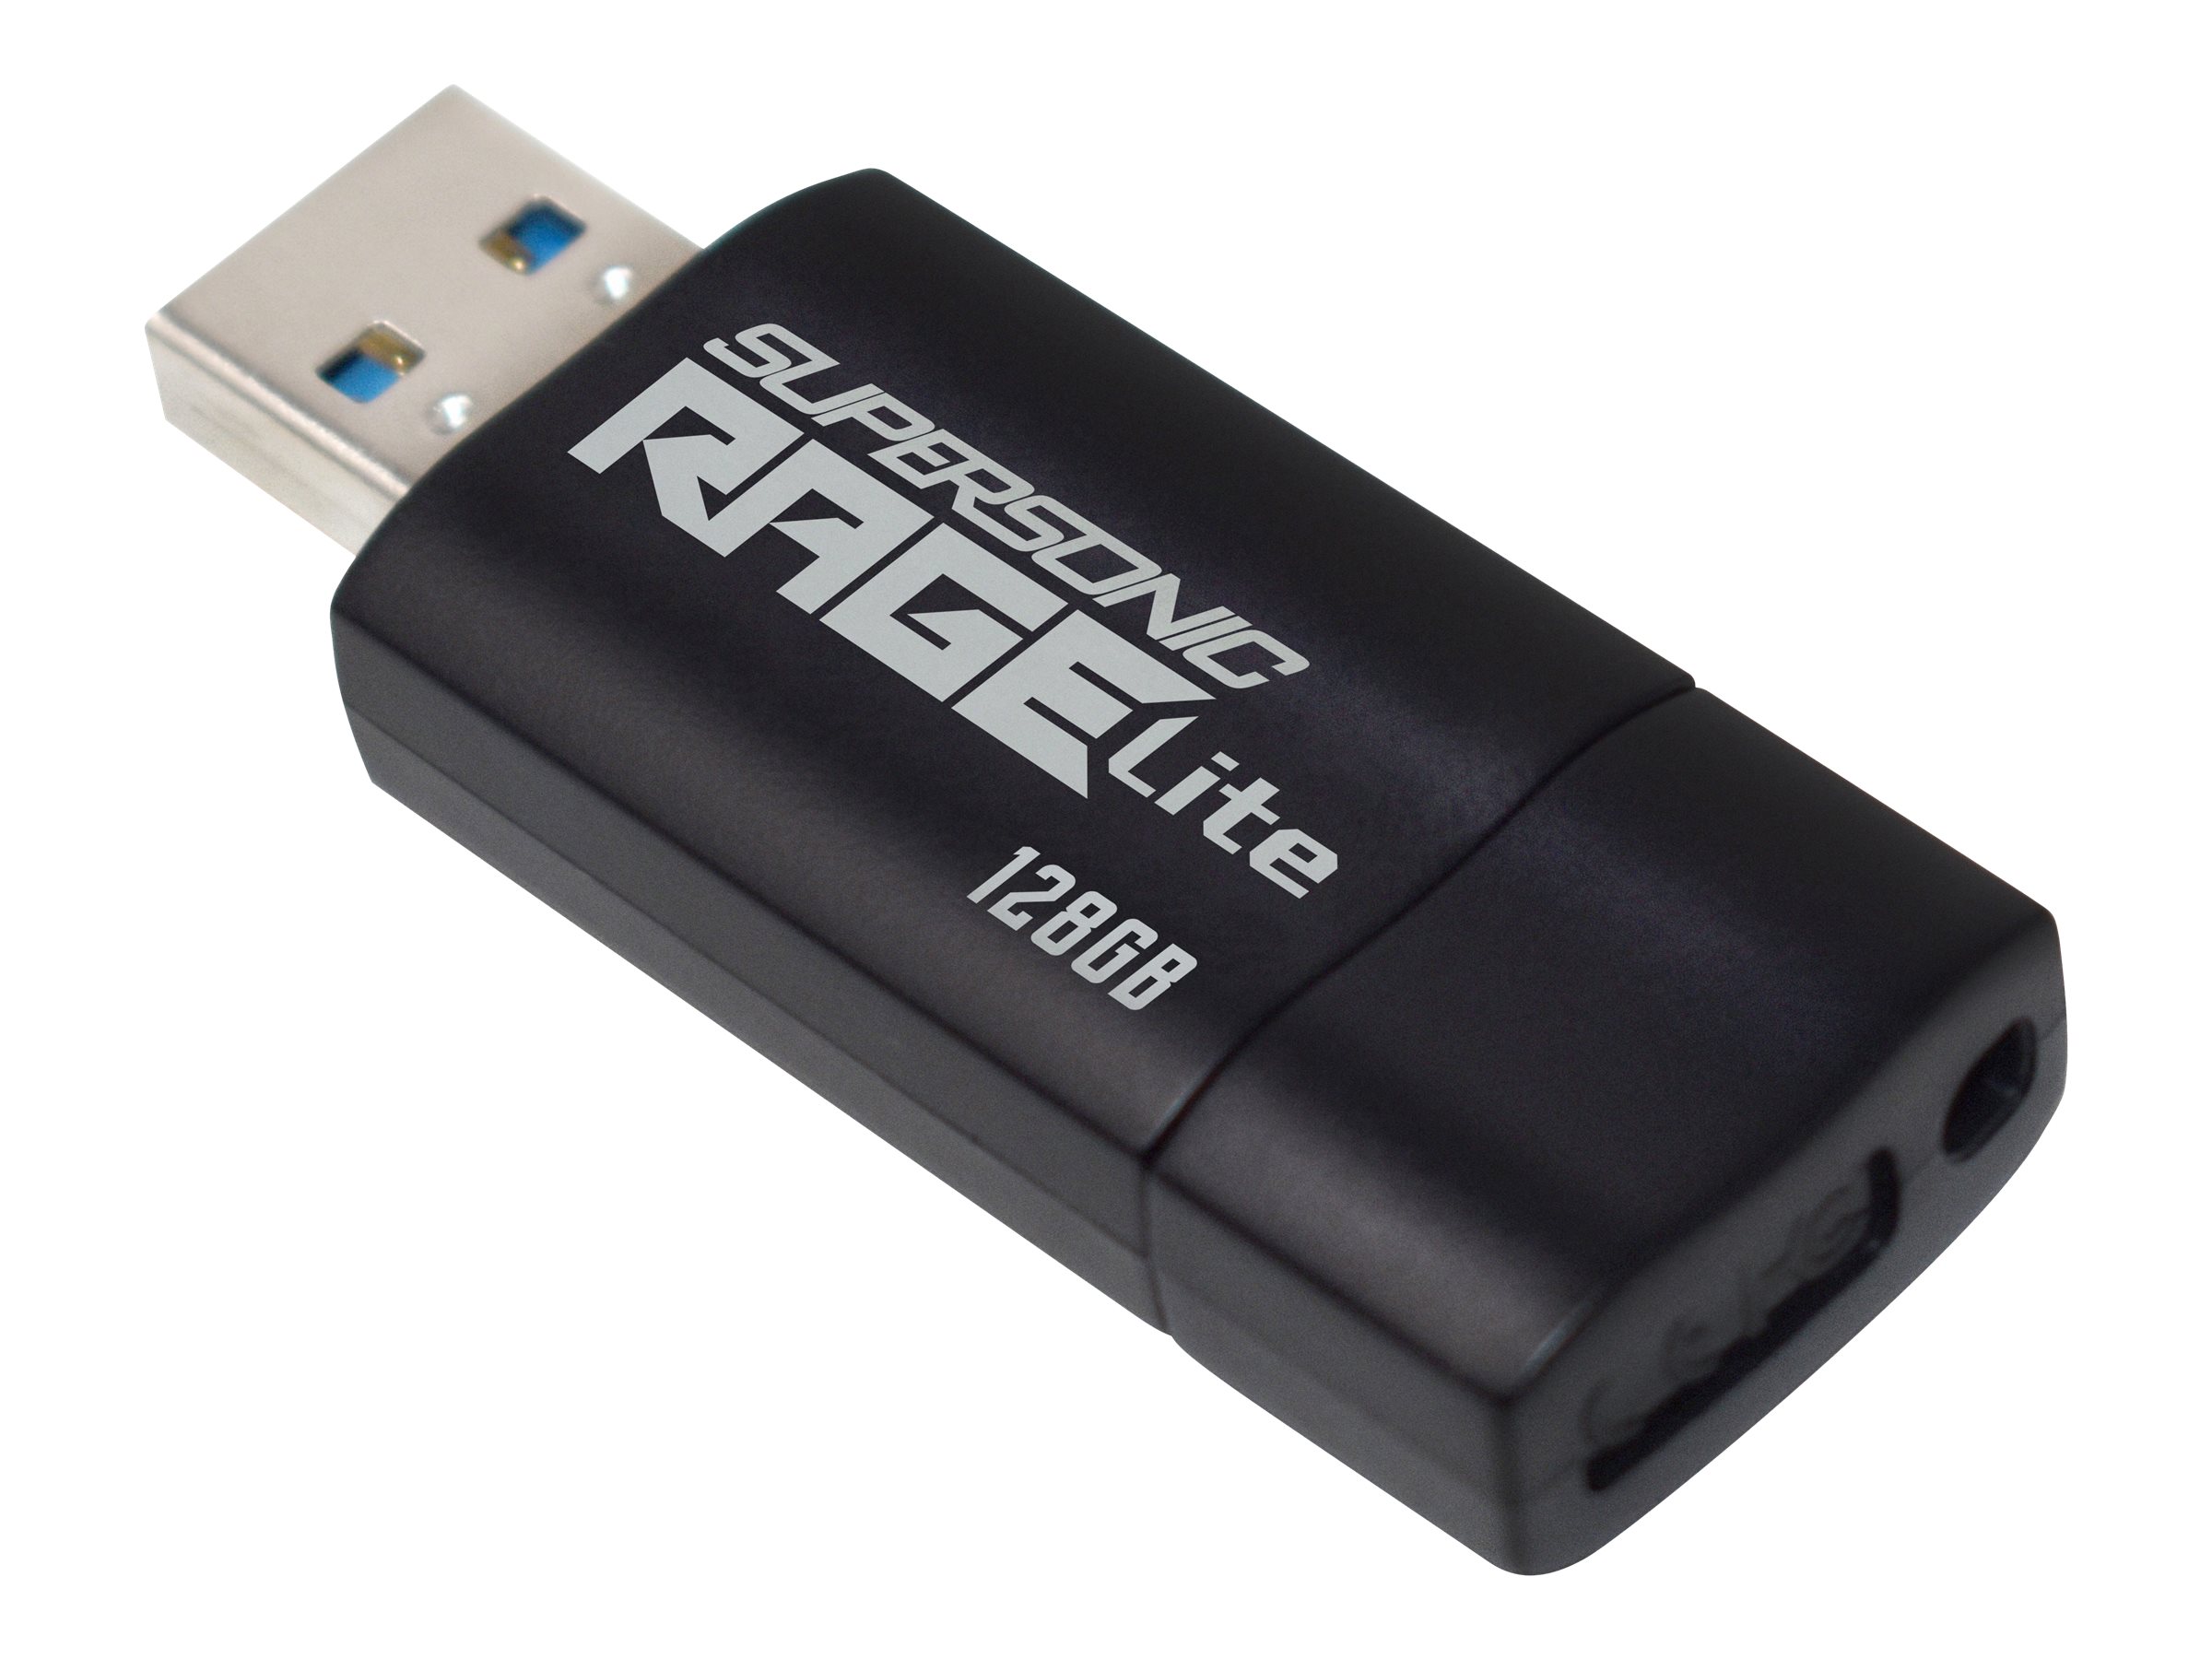 PATRIOT Supersonic Rage Lite - USB-Flash-Laufwerk